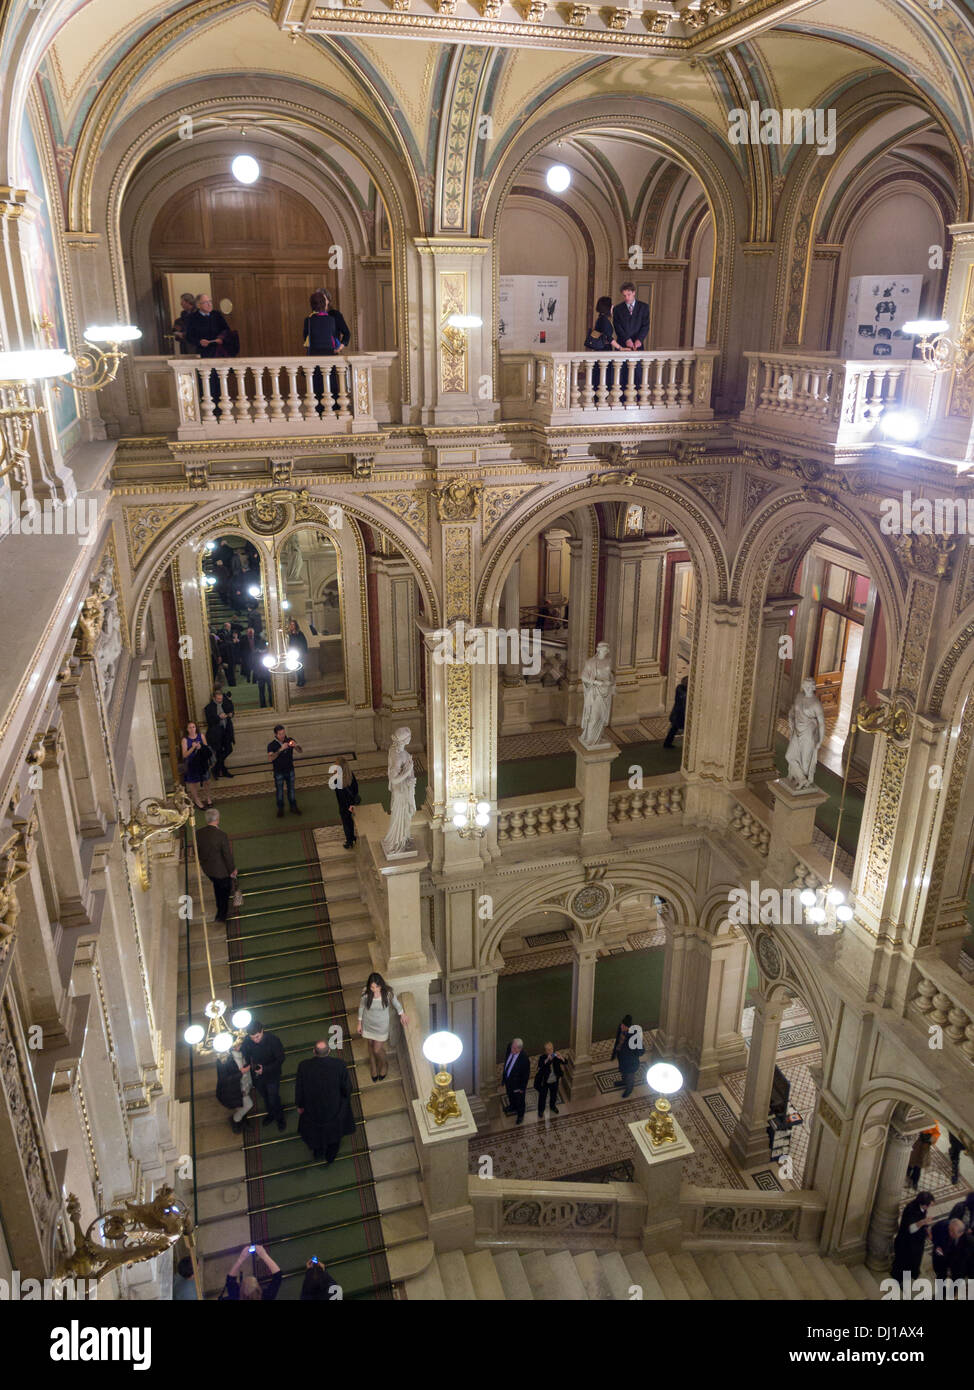 Große Treppe an der Wiener Staatsoper. Die opulente Marmorfoyer und wichtigsten Treppe im berühmten Opernhaus Wiens. Stockfoto